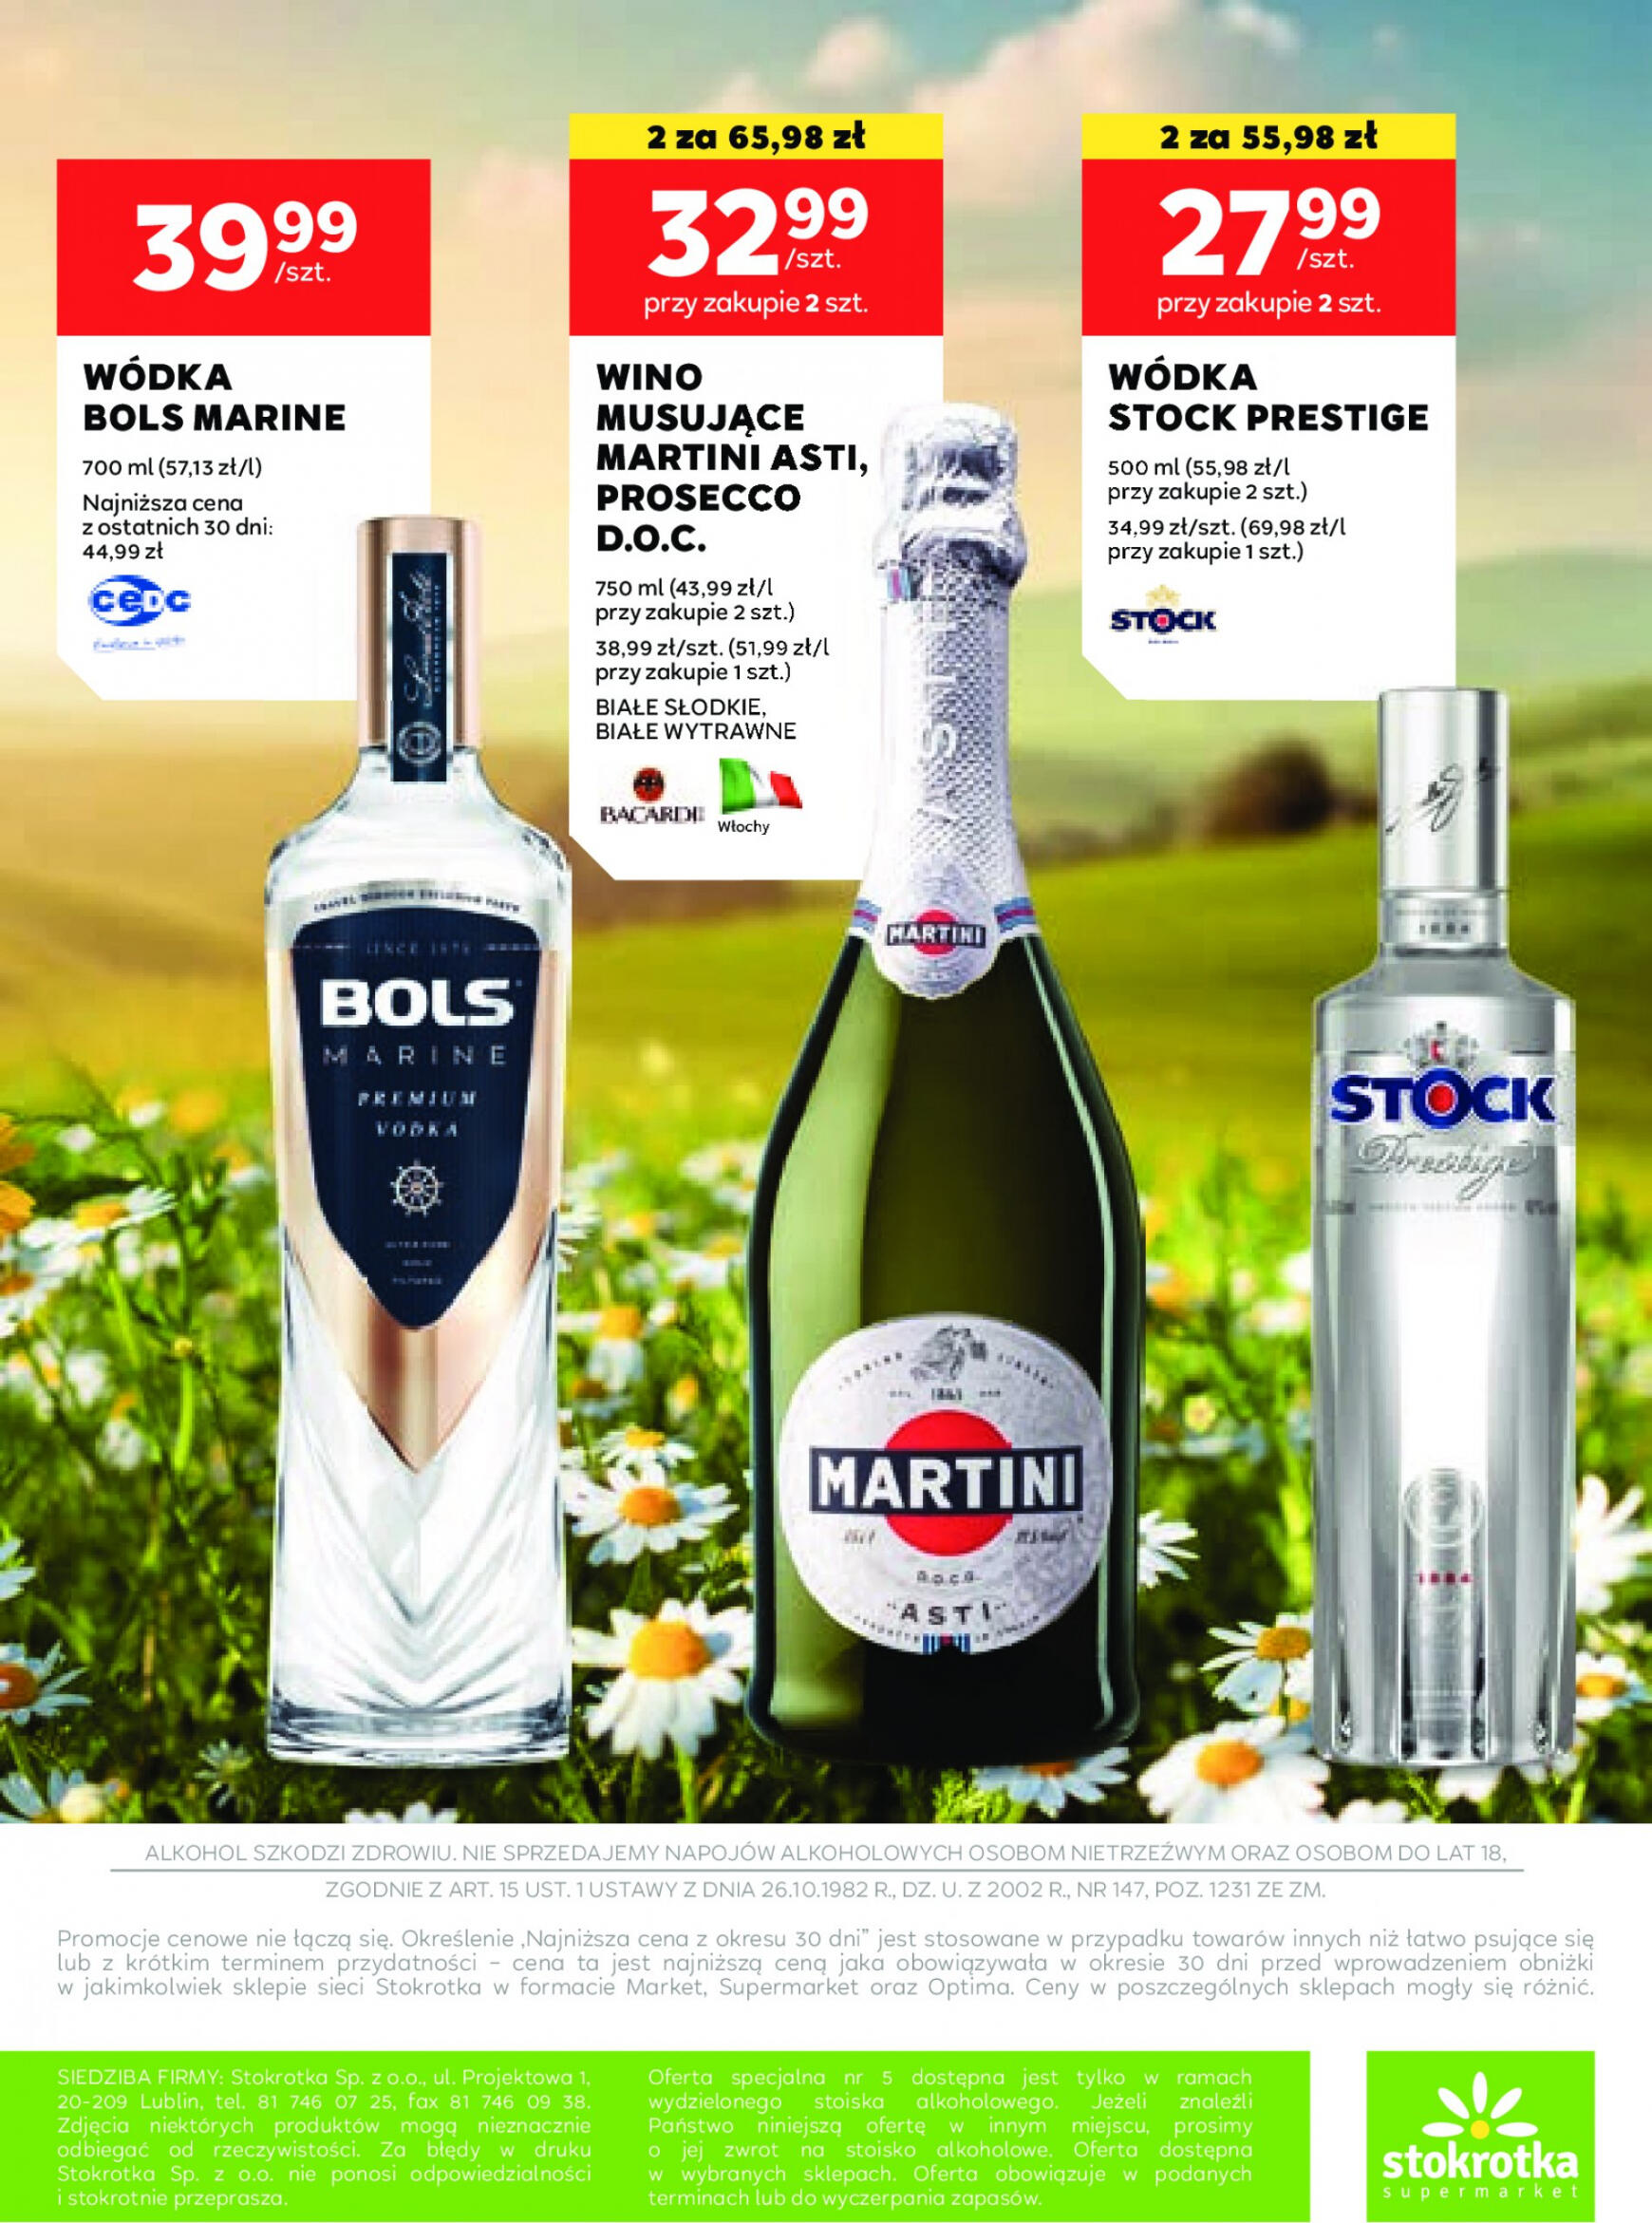 stokrotka - Stokrotka Supermarket - Oferta alkoholowa gazetka aktualna ważna od 25.04. - 22.05. - page: 16